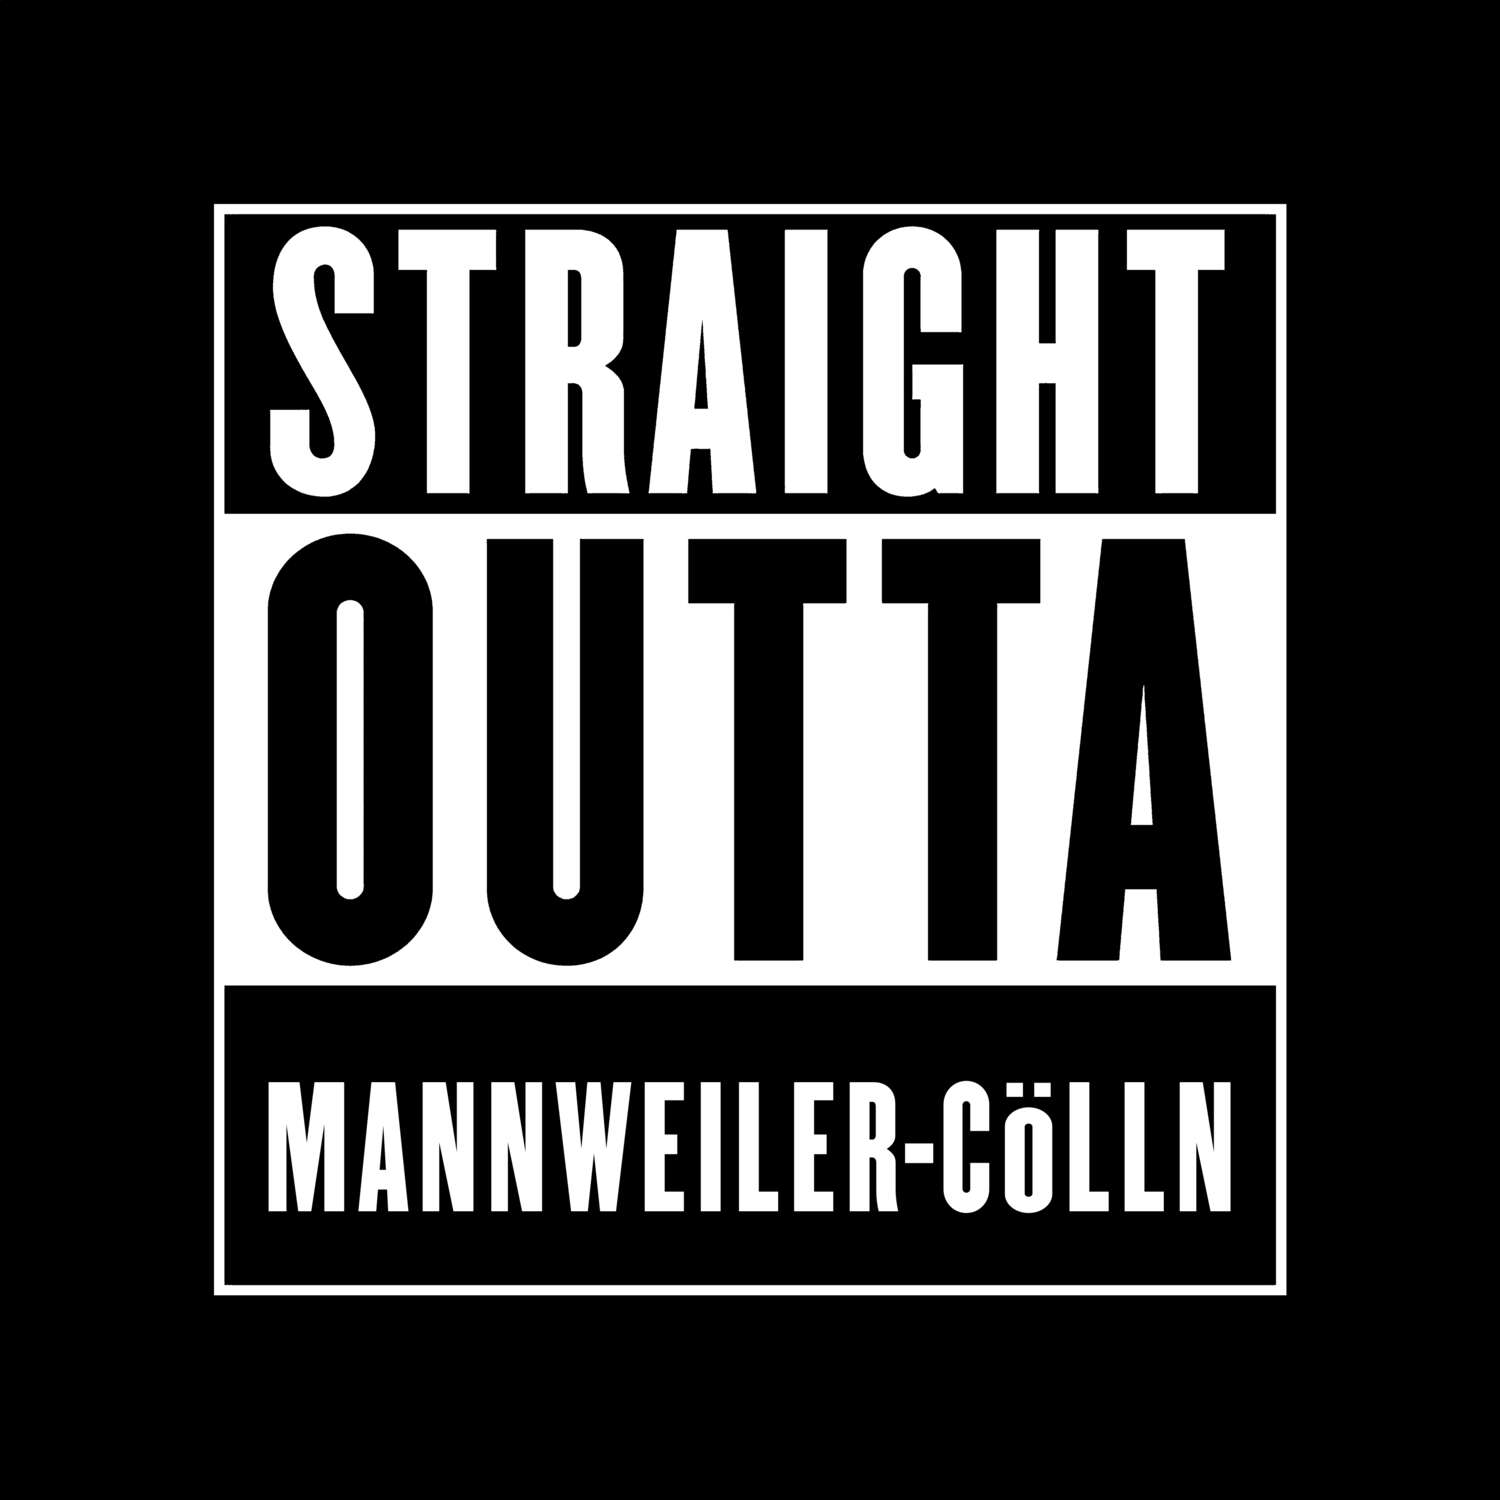 Mannweiler-Cölln T-Shirt »Straight Outta«